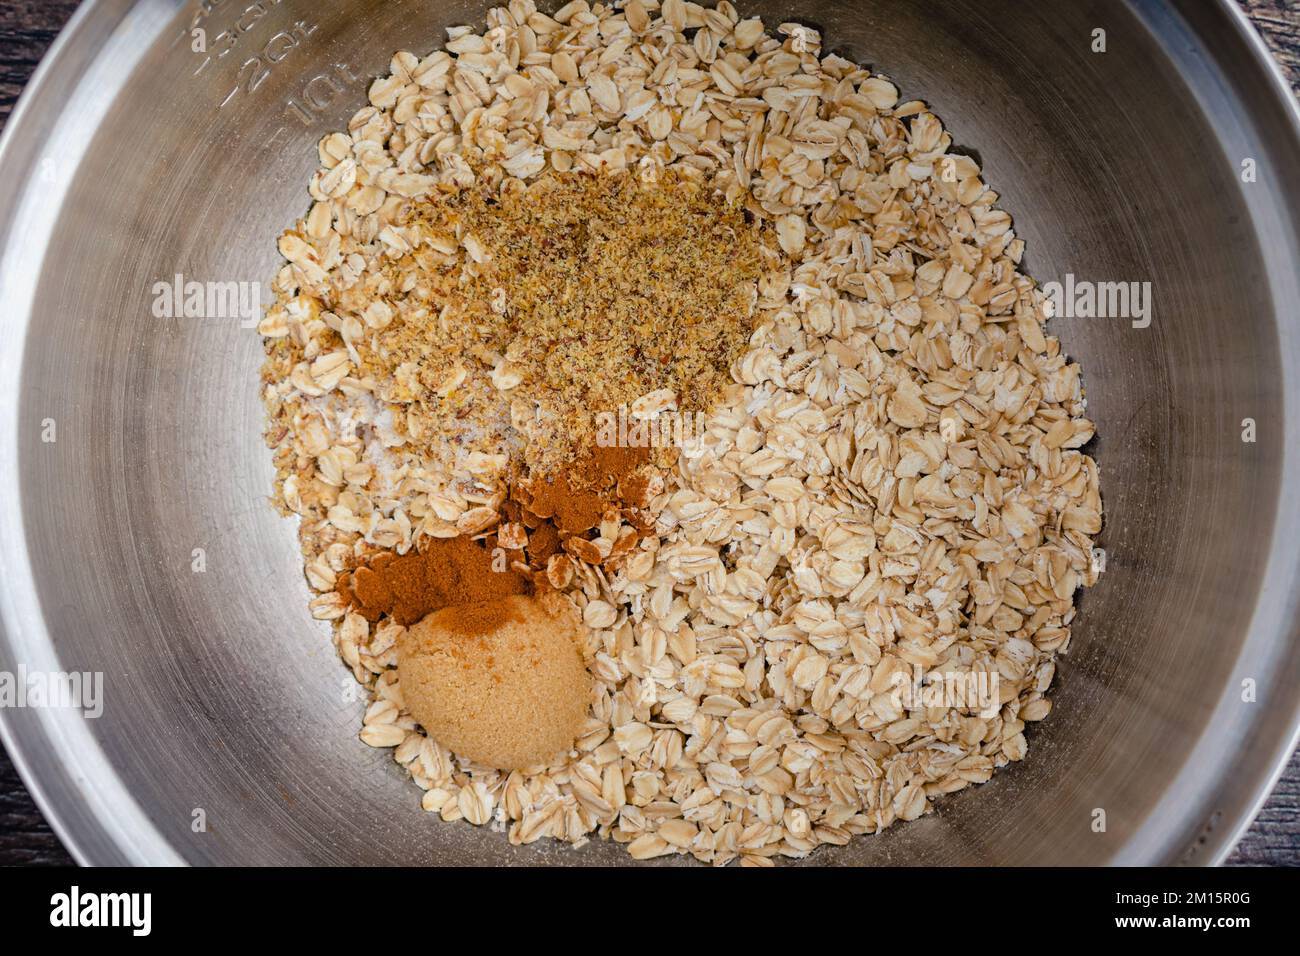 Ingrédients secs pour les flocons d'avoine cuits dans un saladier gros plan : flocons d'avoine, graines de lin moulues, cannelle, cassonade et sel dans un grand bol Banque D'Images